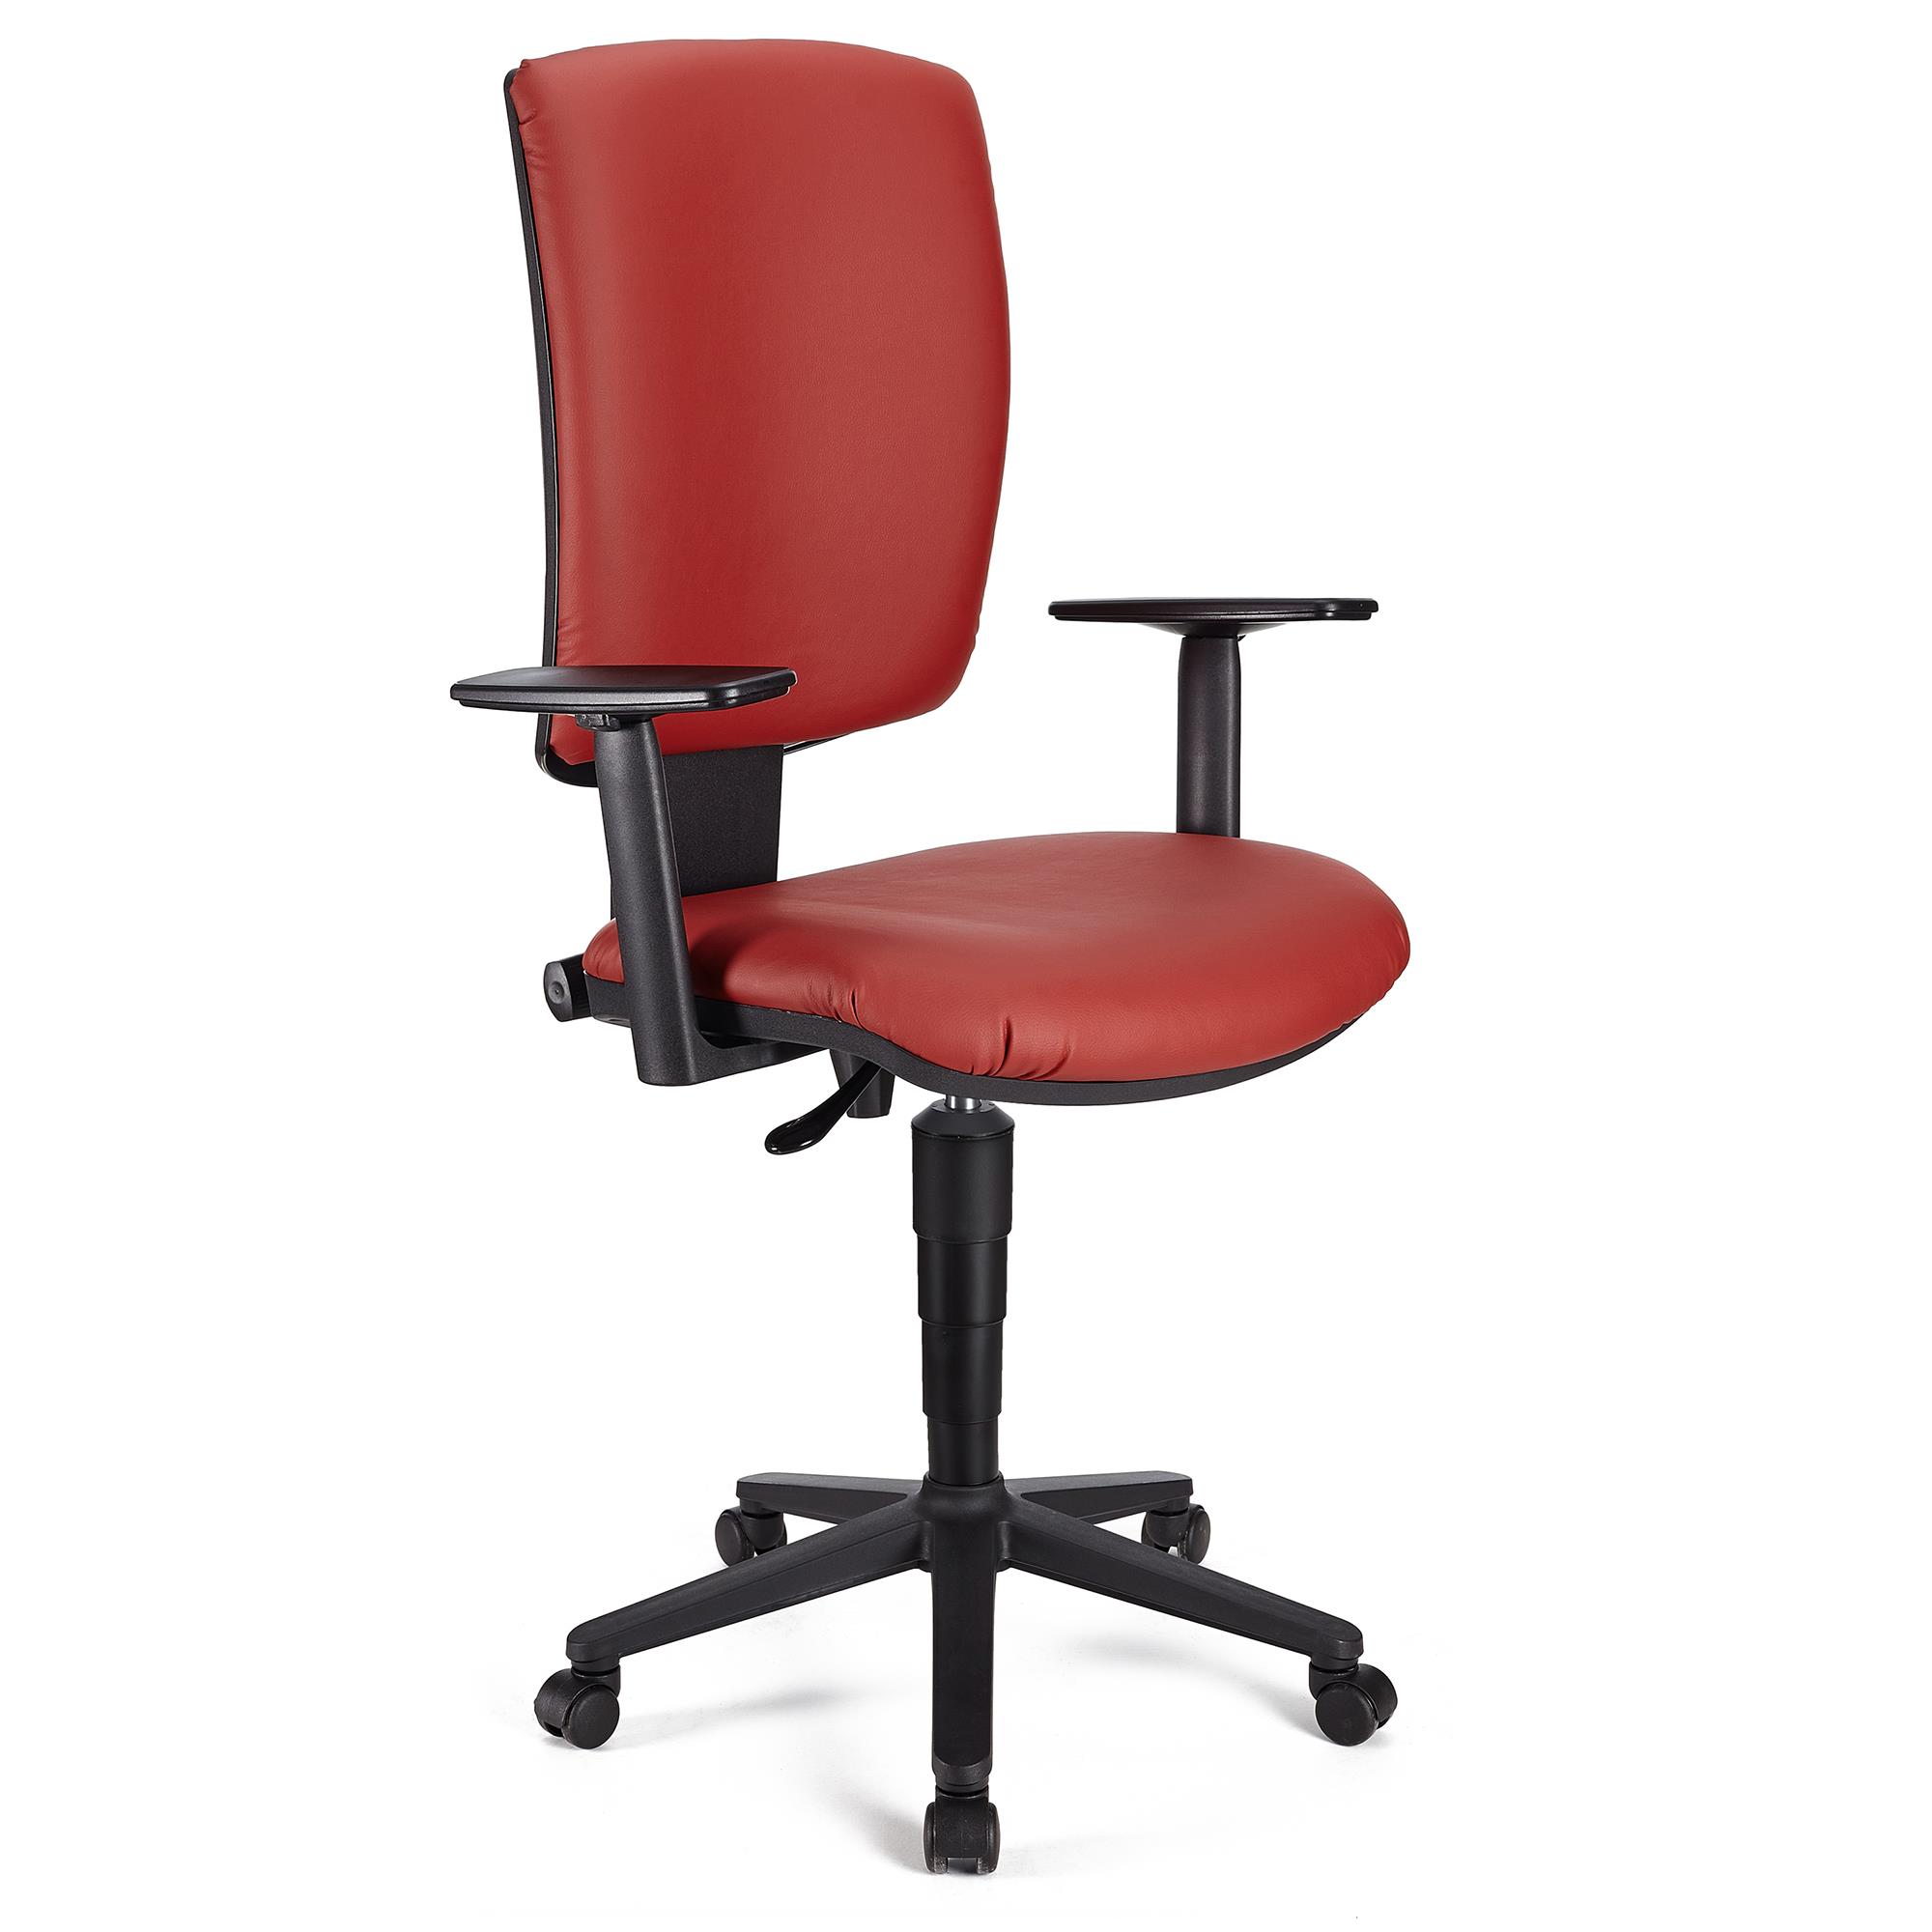 Bürostuhl ATLAS PLUS LEDER, verstellbare Rücken- und Armlehnen, dicke Polsterung, Farbe Rot